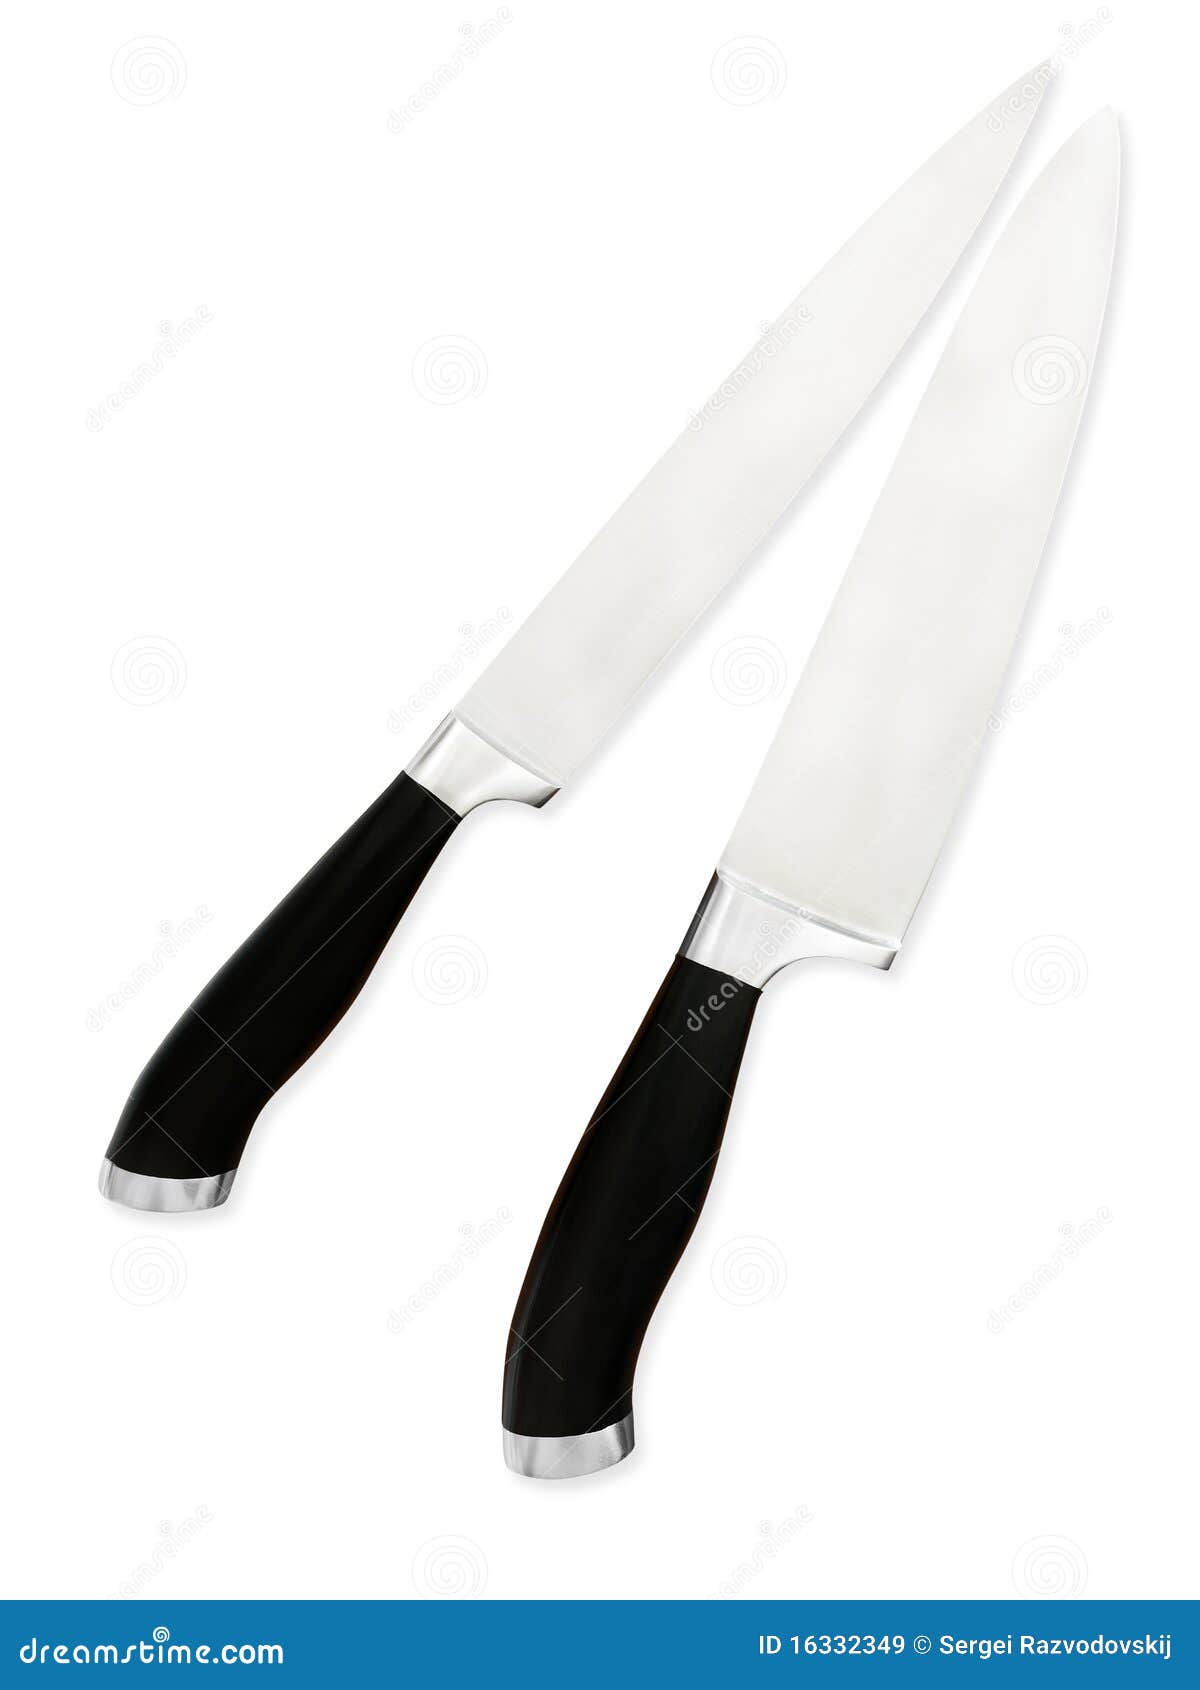 clipart kitchen knife - photo #45